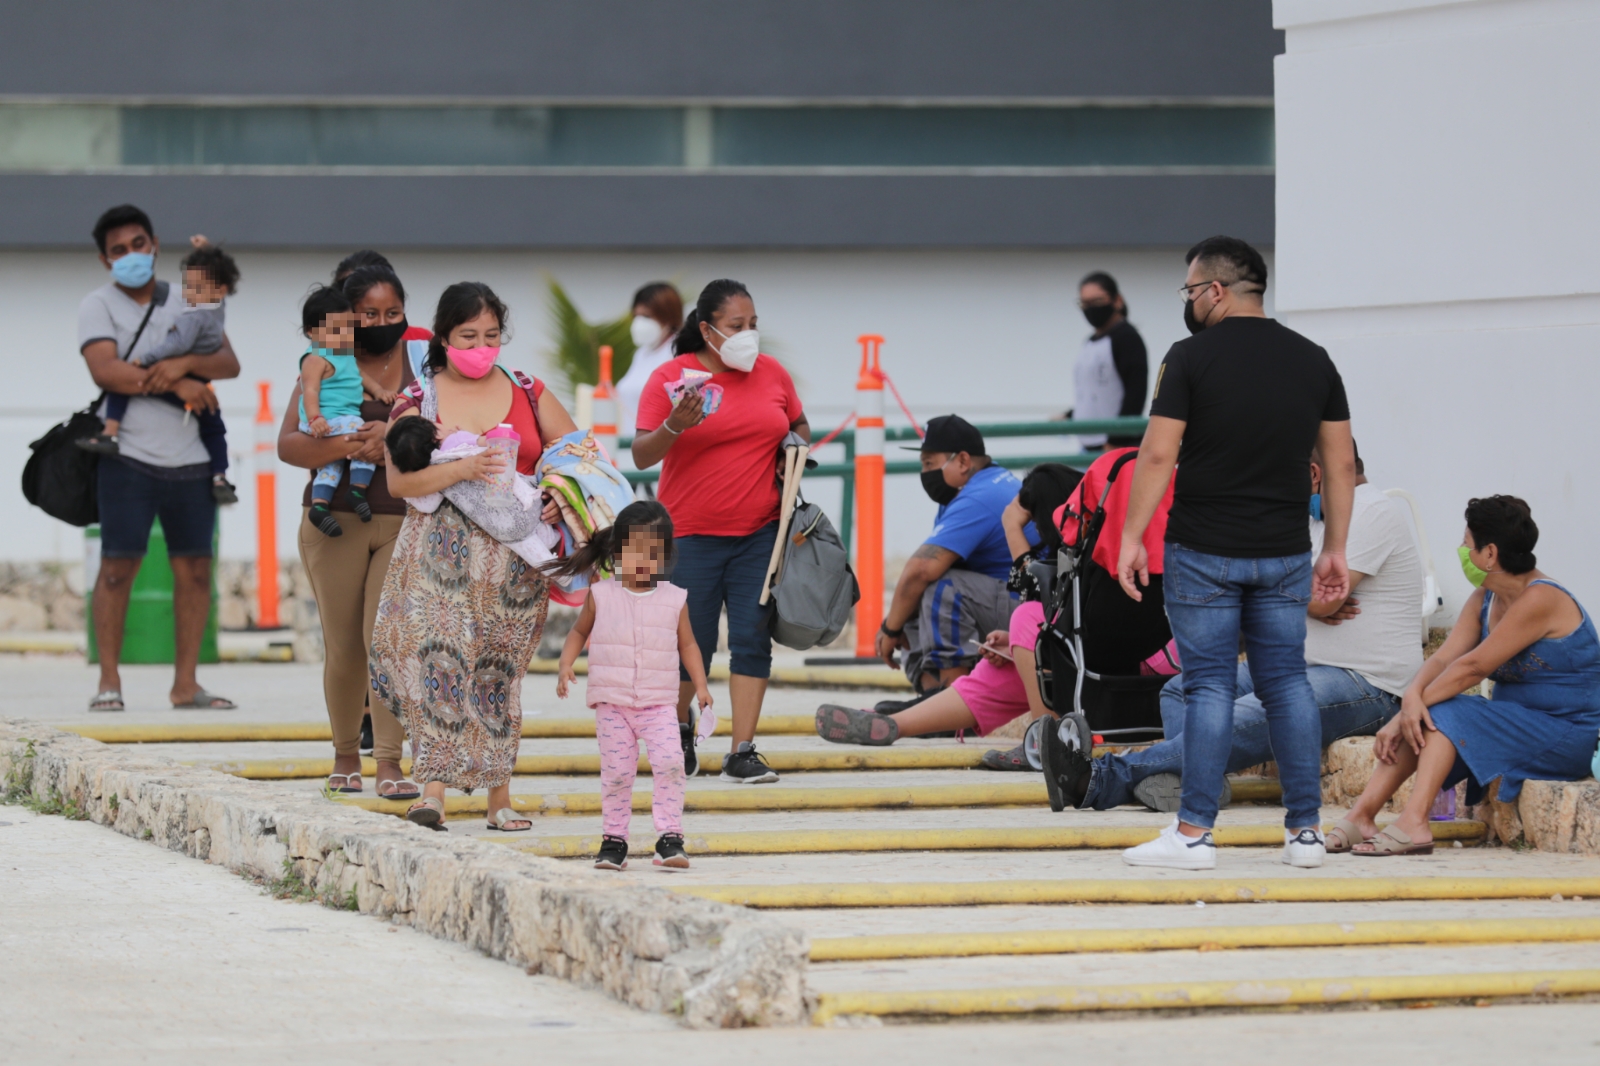 Durante la pandemia, 2 mil 974 niños ya contrajeron COVID-19 en 
la Península de Yucatán